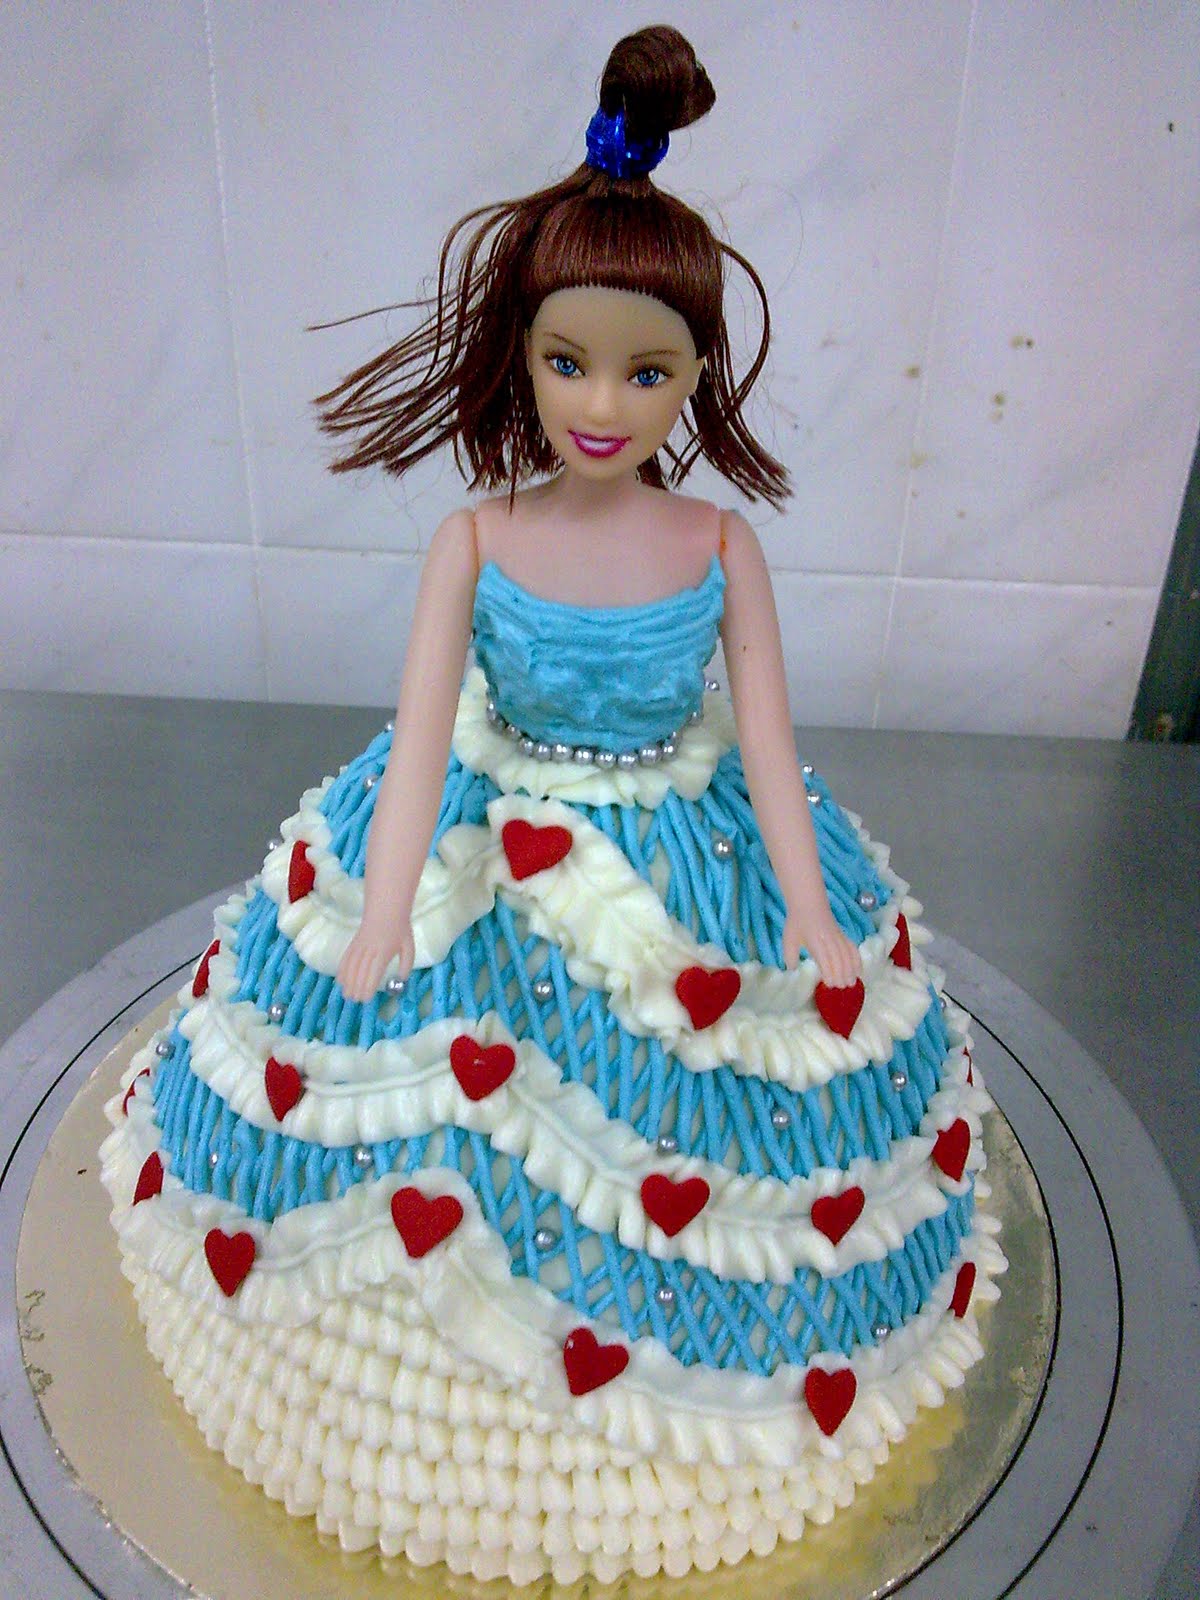 Q Cake House: 娃娃蛋糕